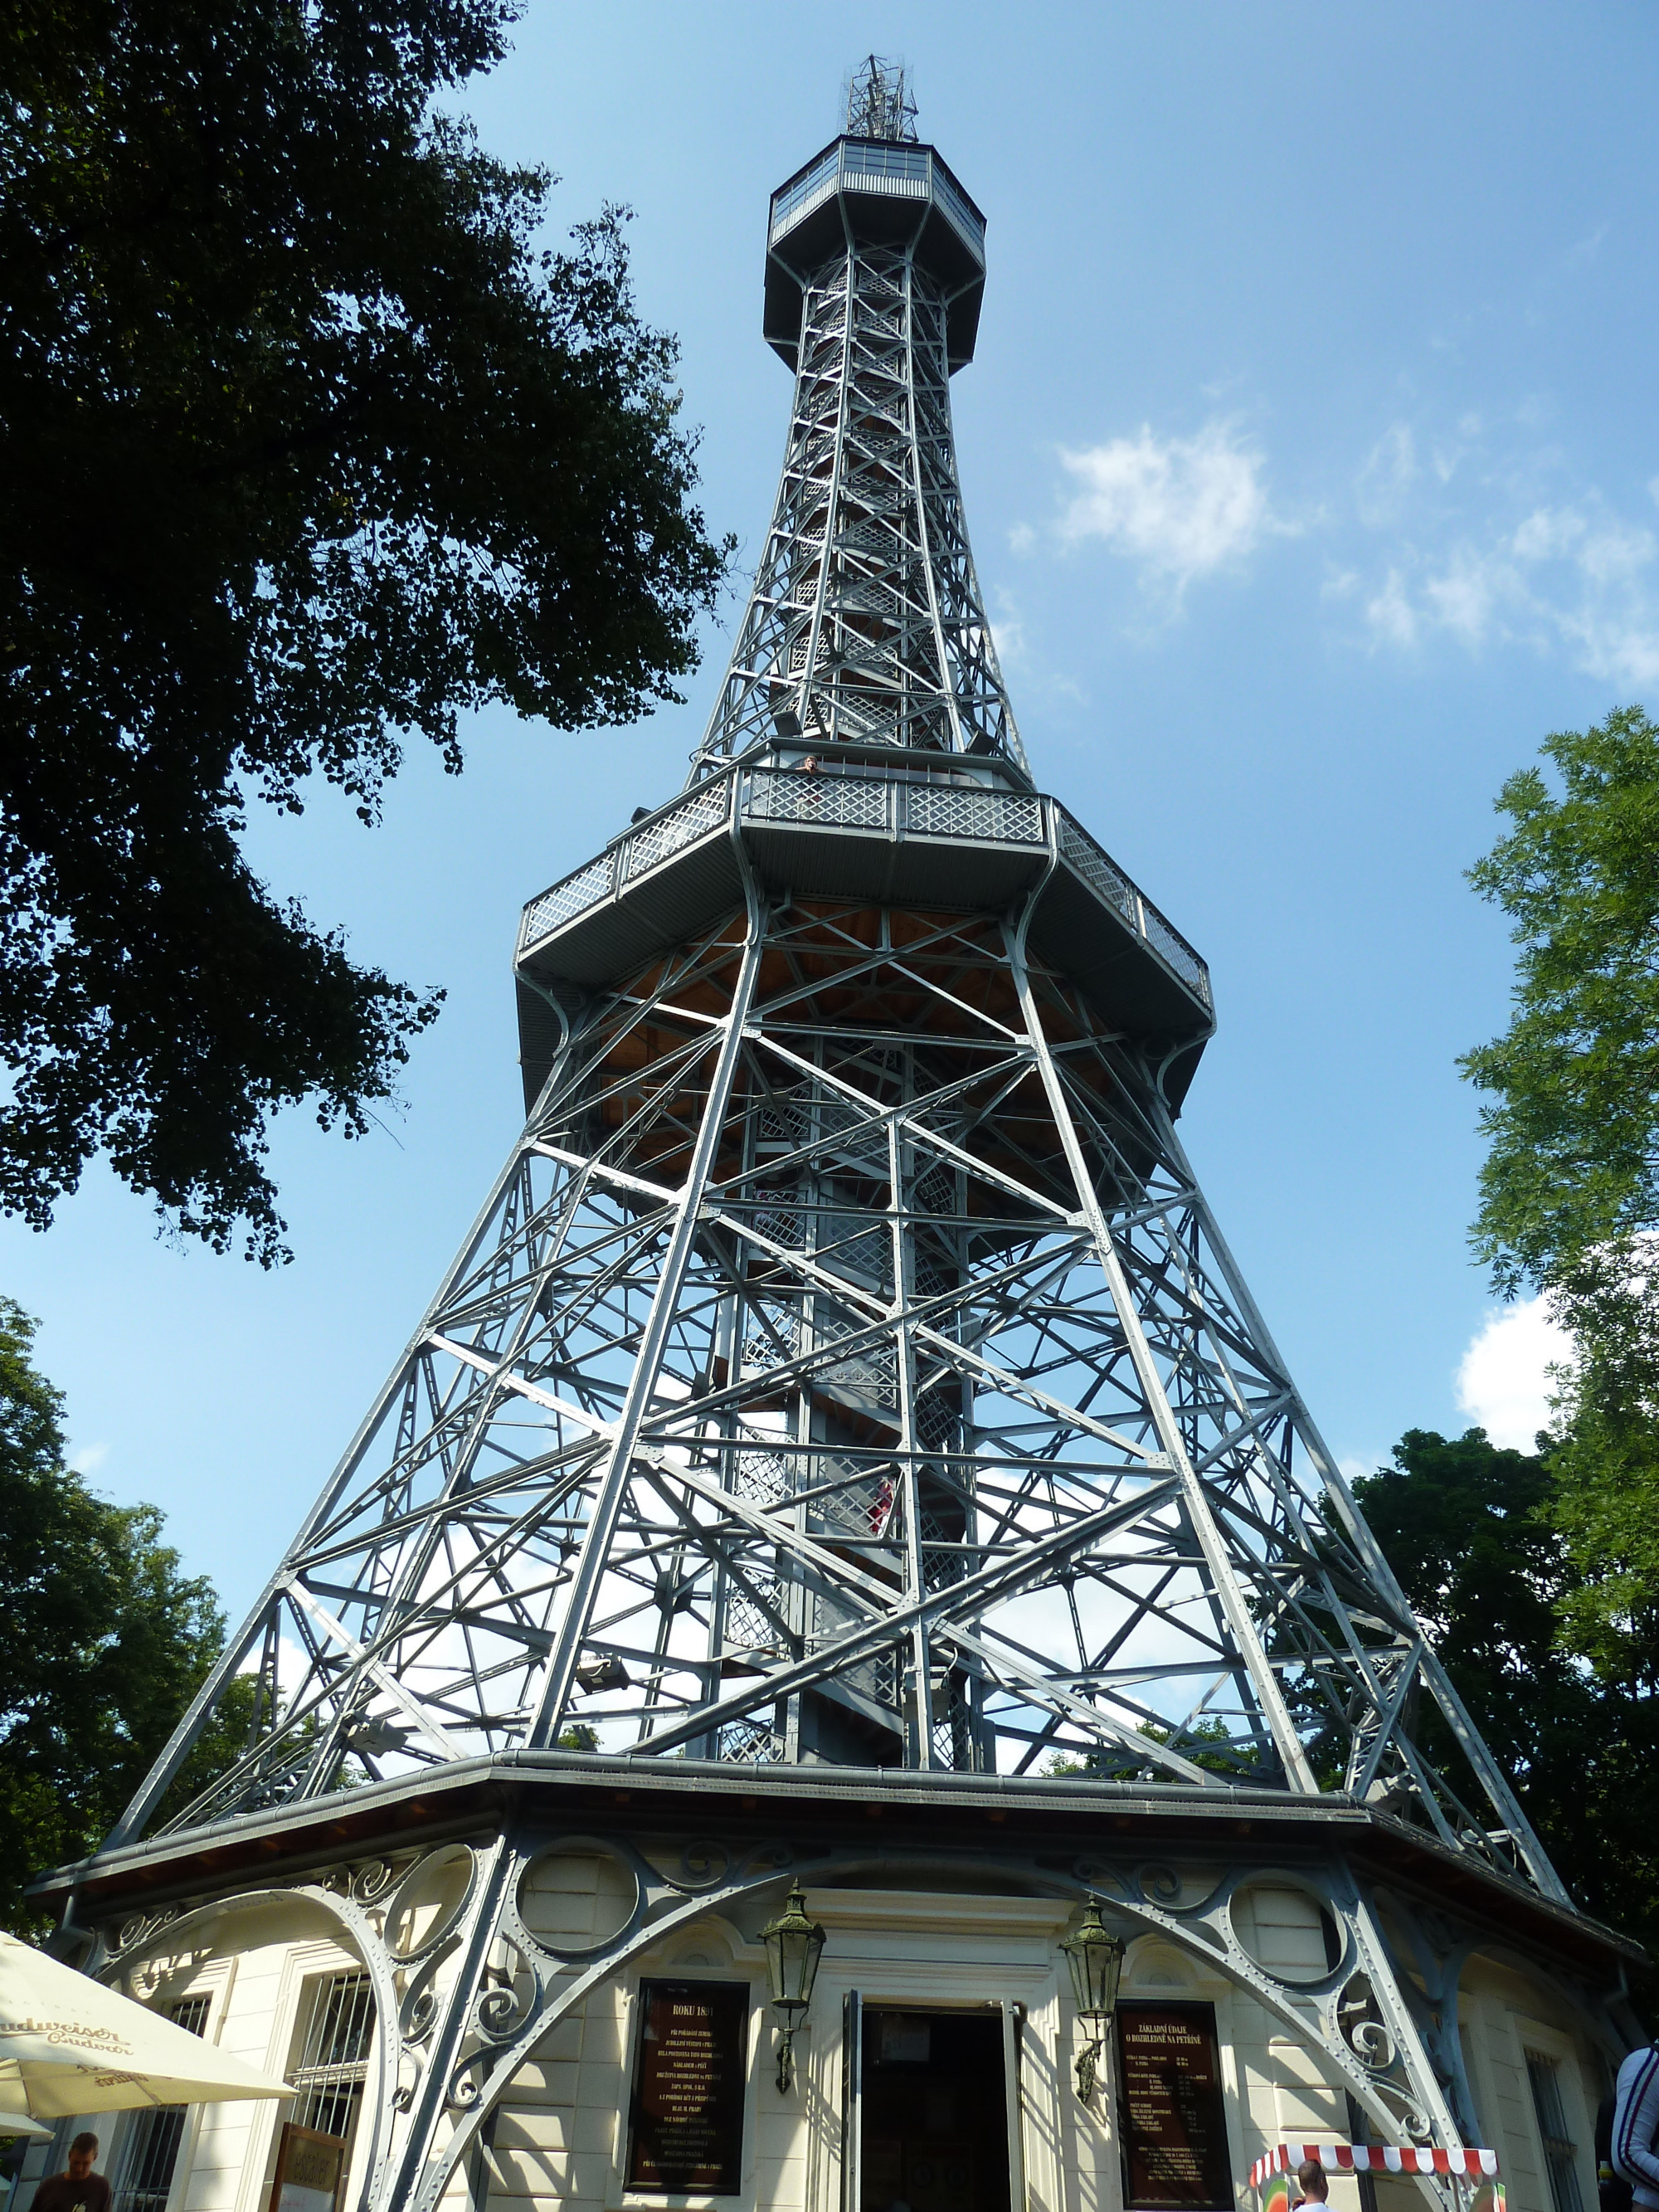 Petřín Lookout Tower, Czech Republic